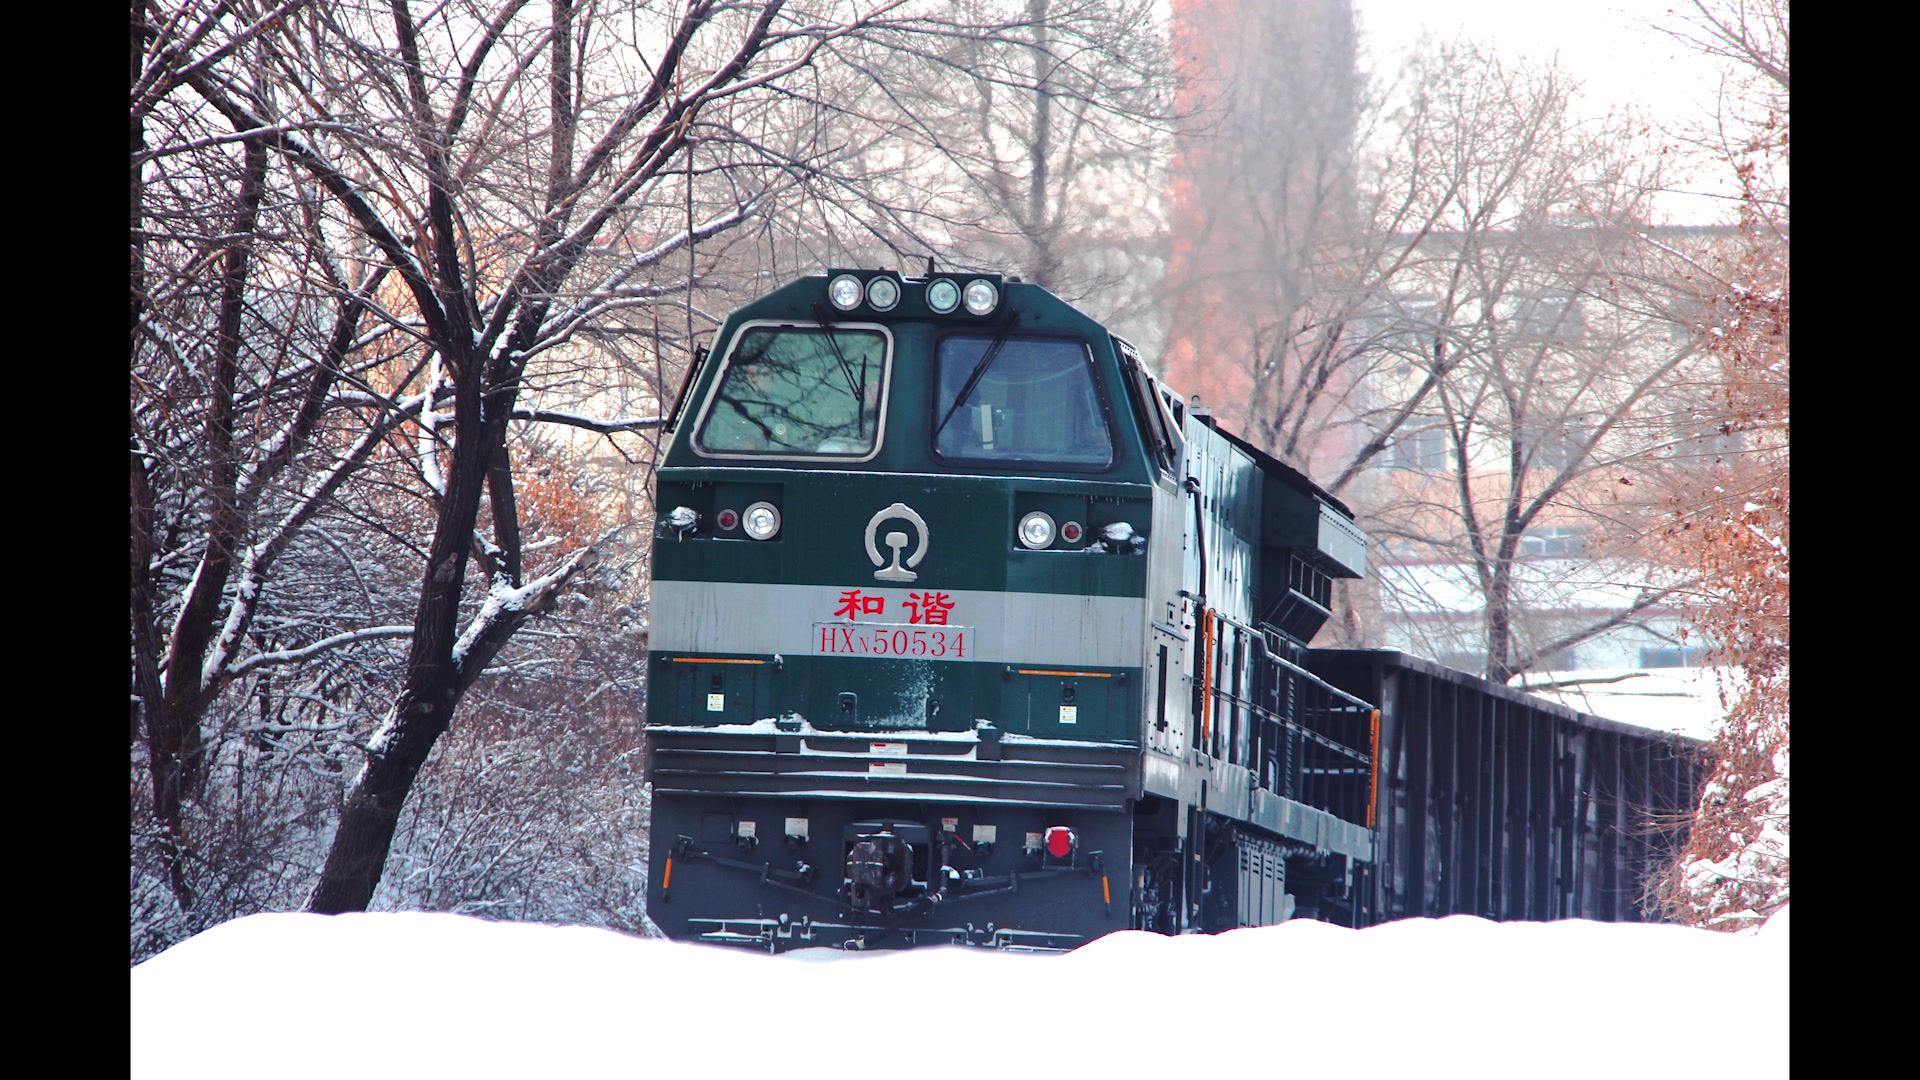 【摄影】铁路题材摄影《雪后》最美的距离幺肆弎伍 一组三张